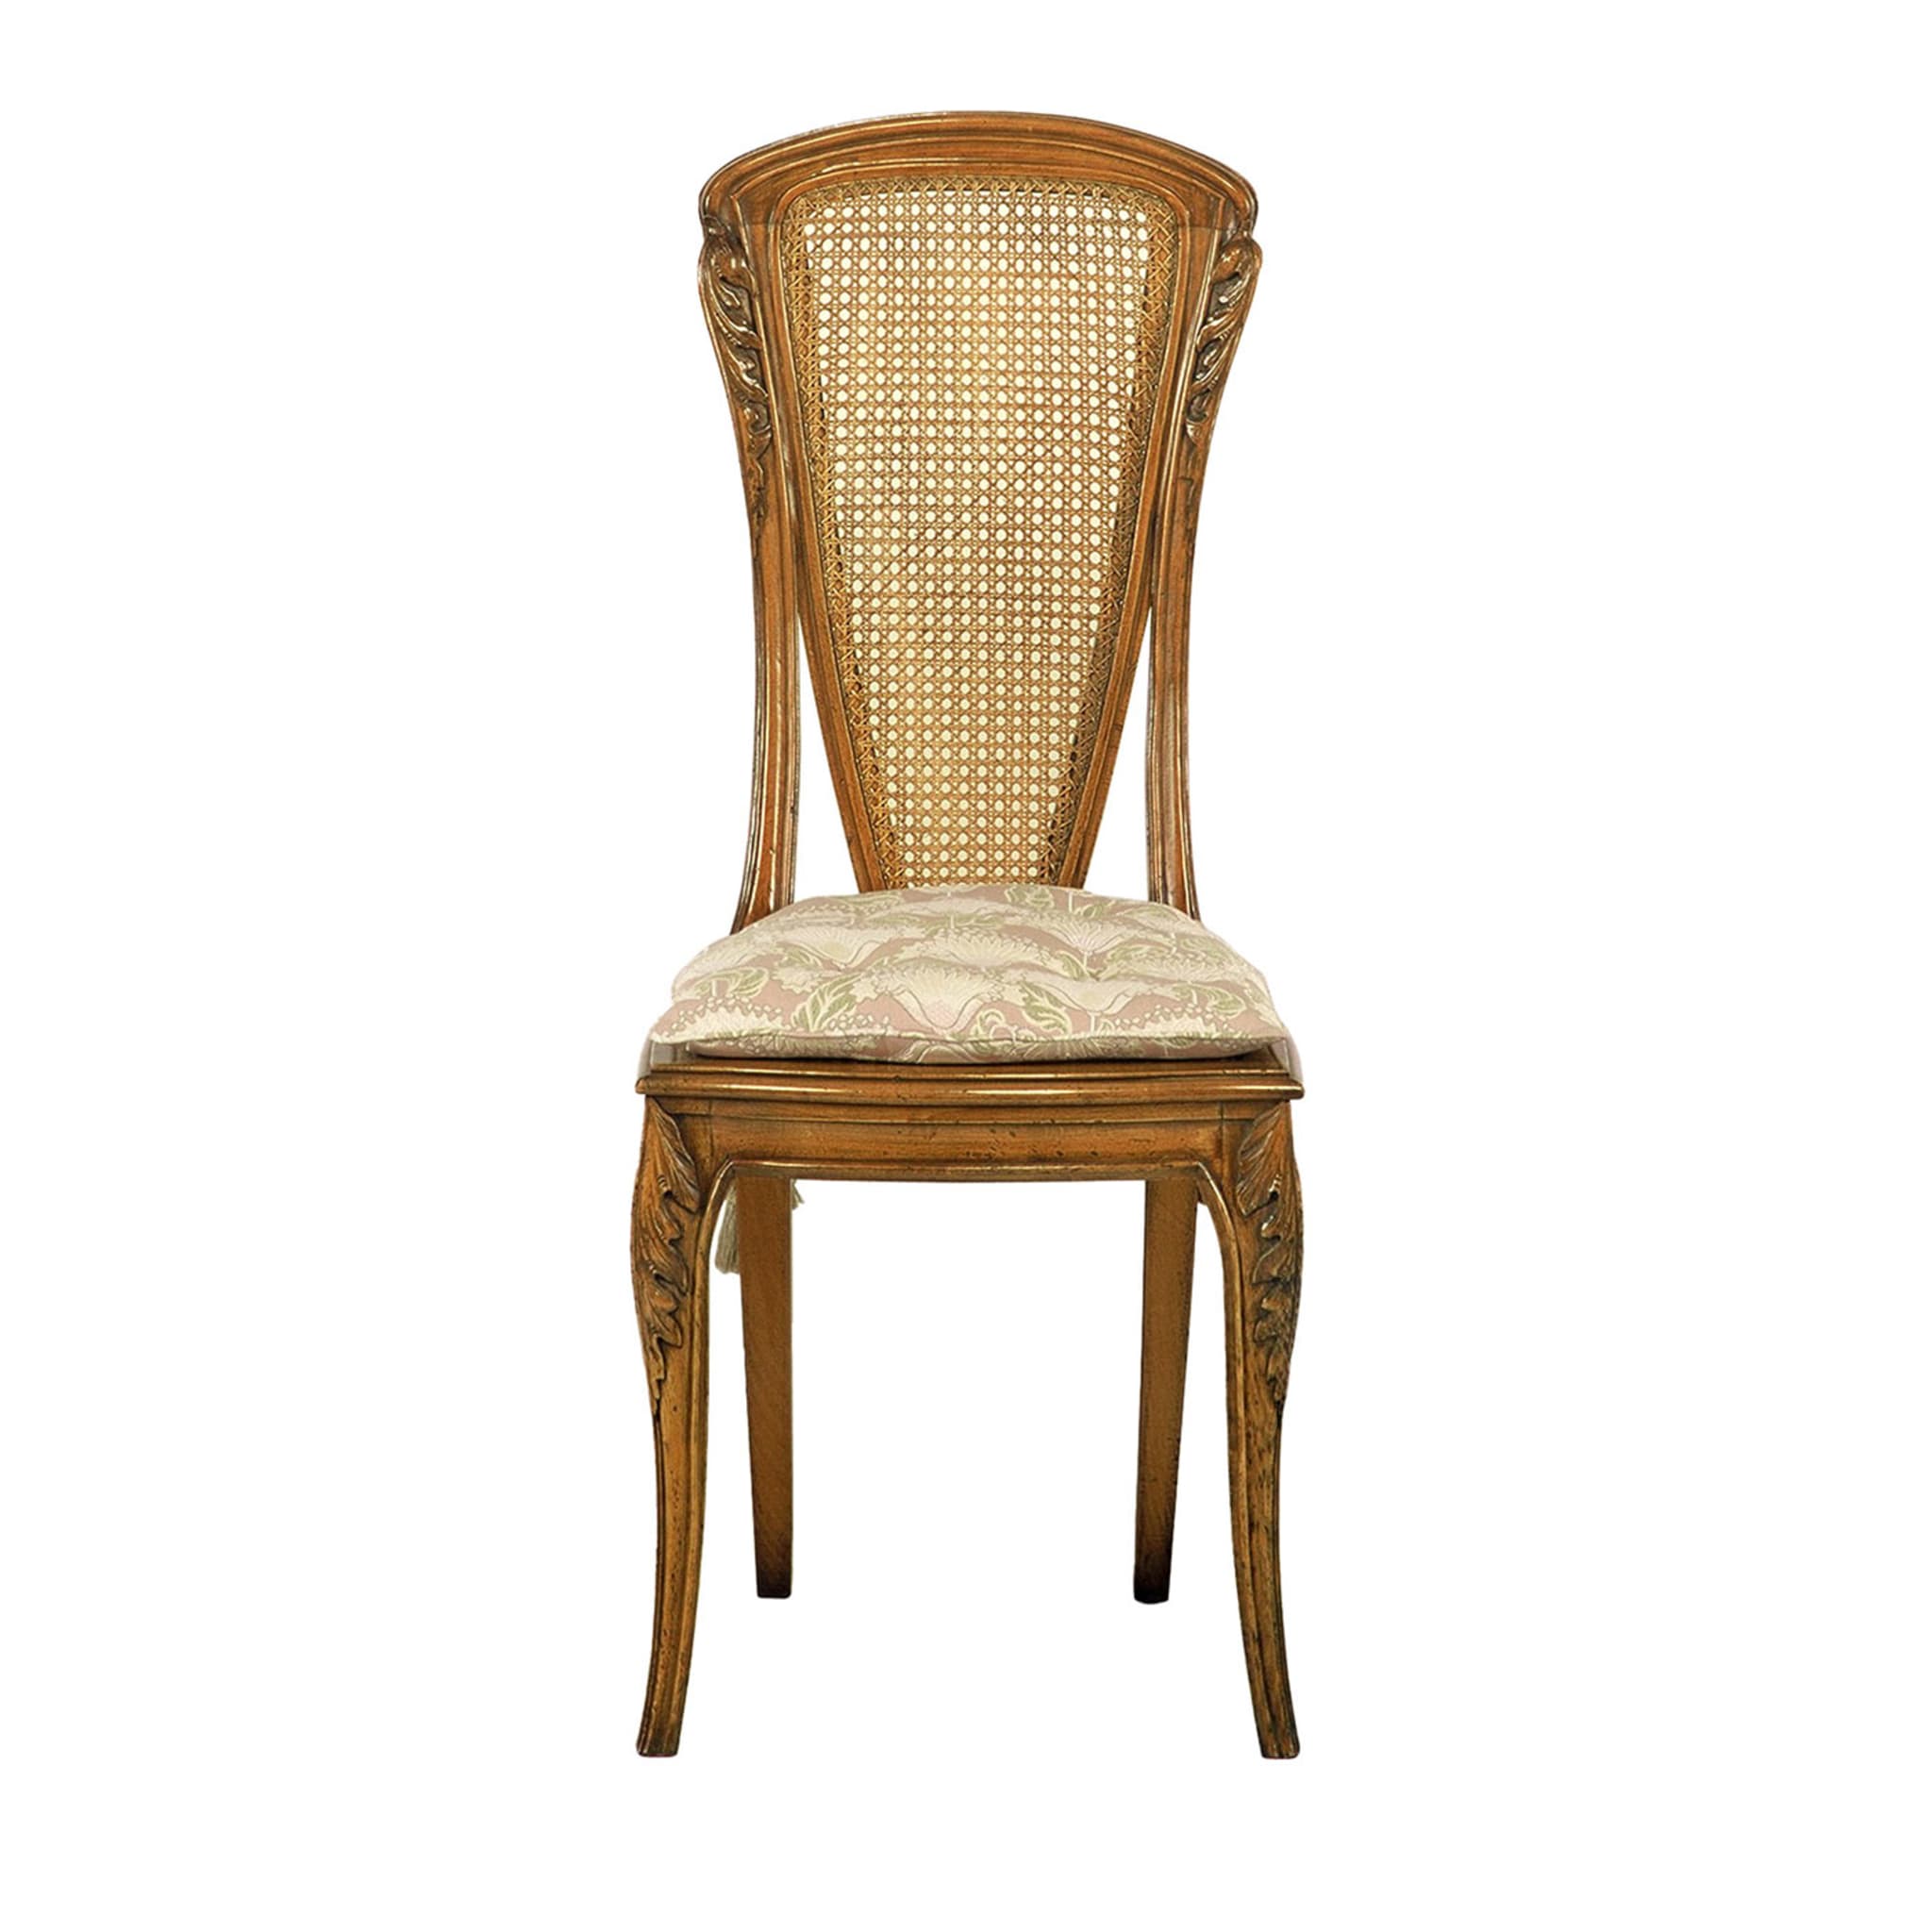 Französischer Jugendstil-Stuhl von Louis Majorelle - Hauptansicht